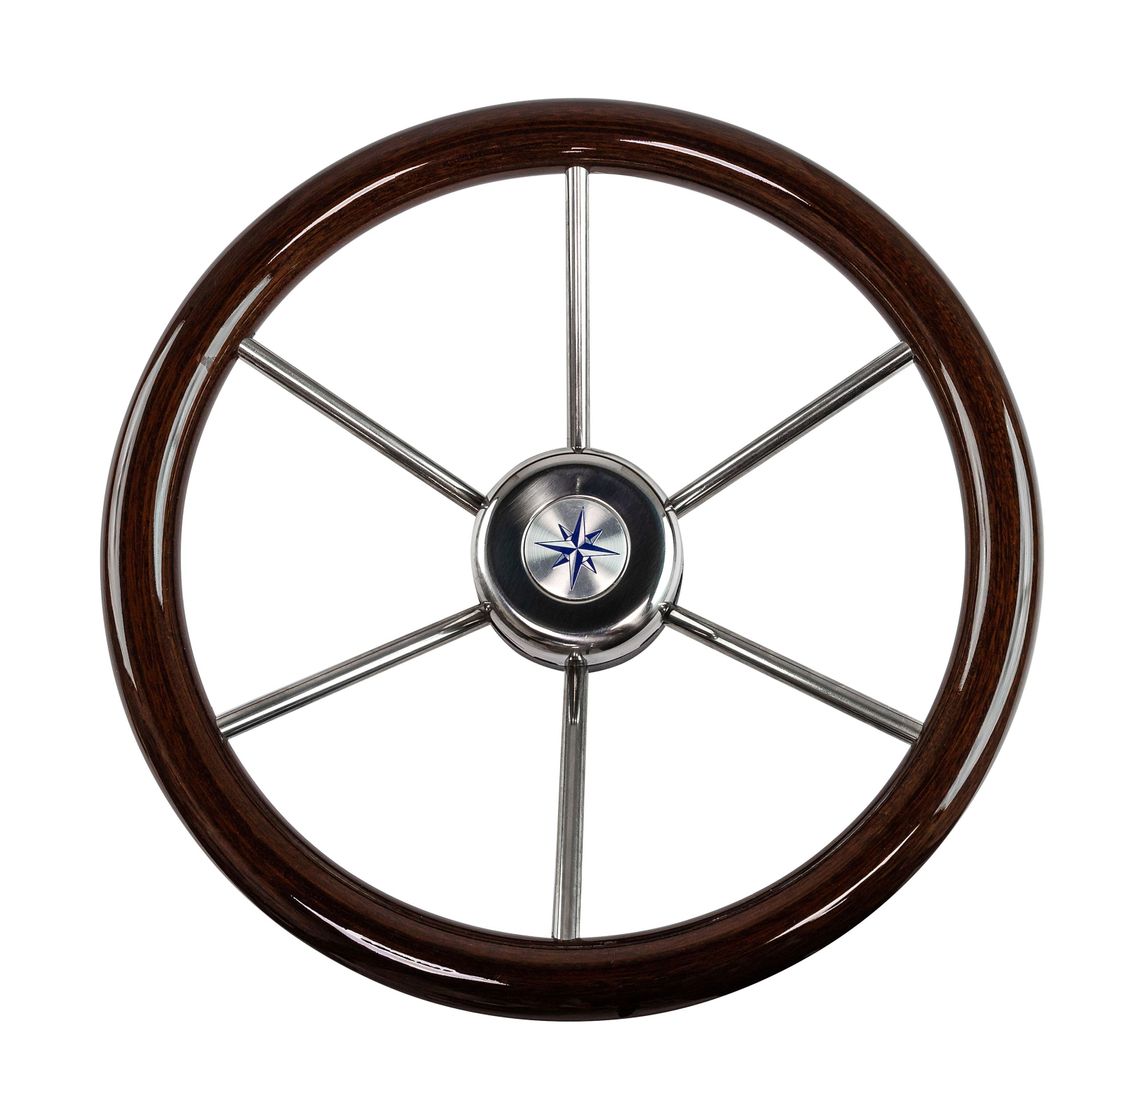 Рулевое колесо LEADER WOOD PLUS деревянный обод серебряные спицы д. 360 мм купить c доставкой